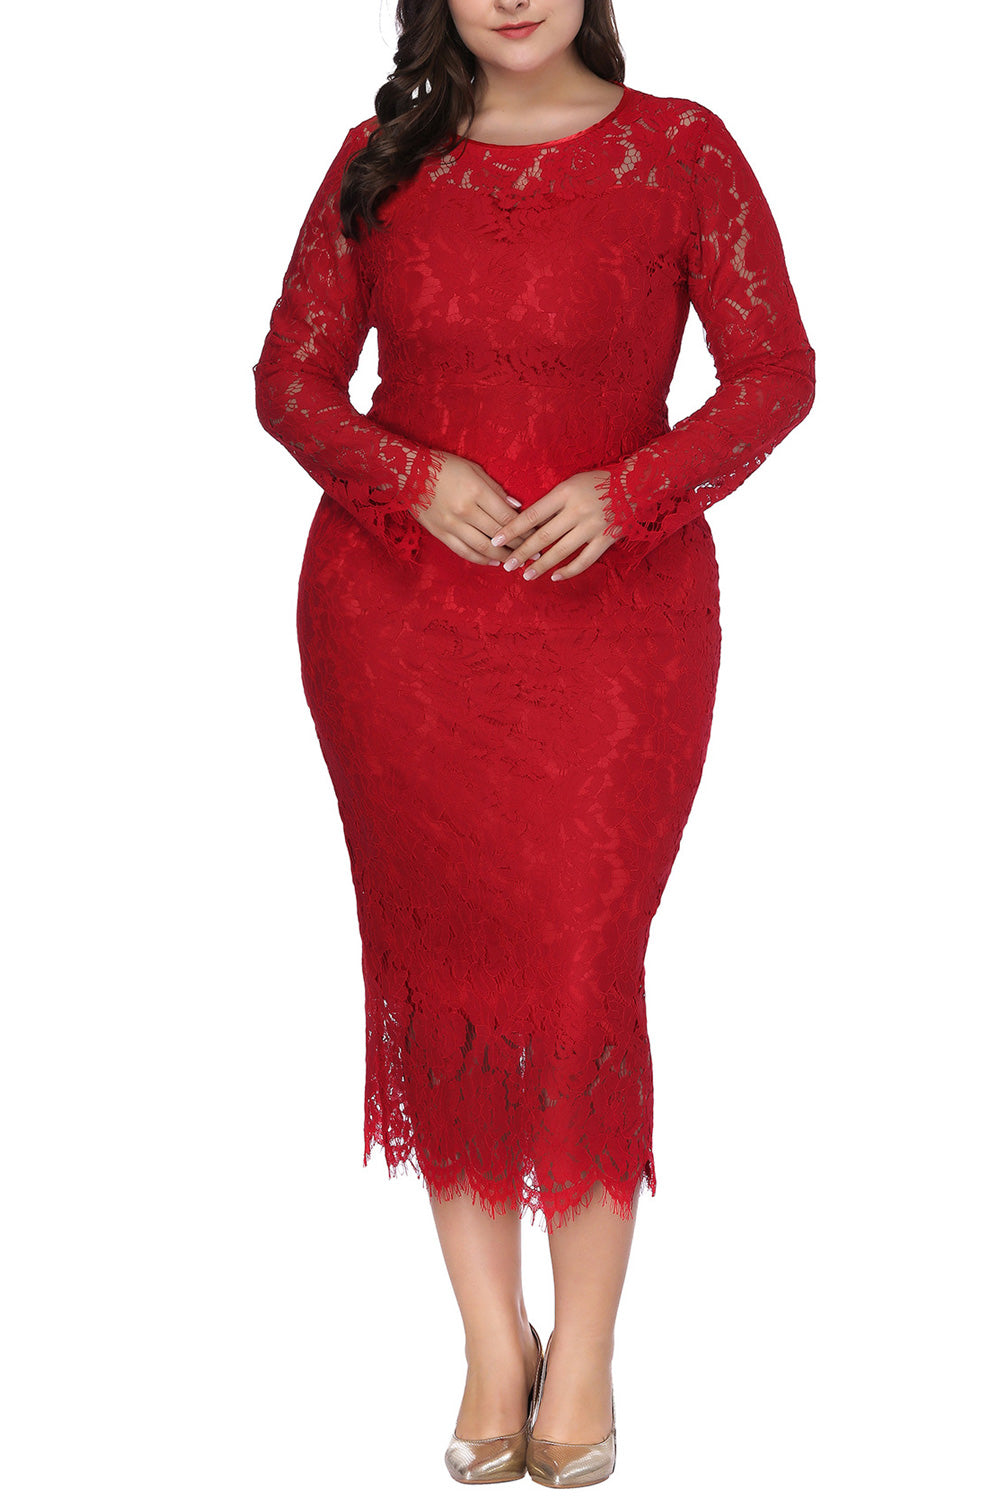 Ketty More Women Plus Size Elegant Style Party Dress-KMWD124